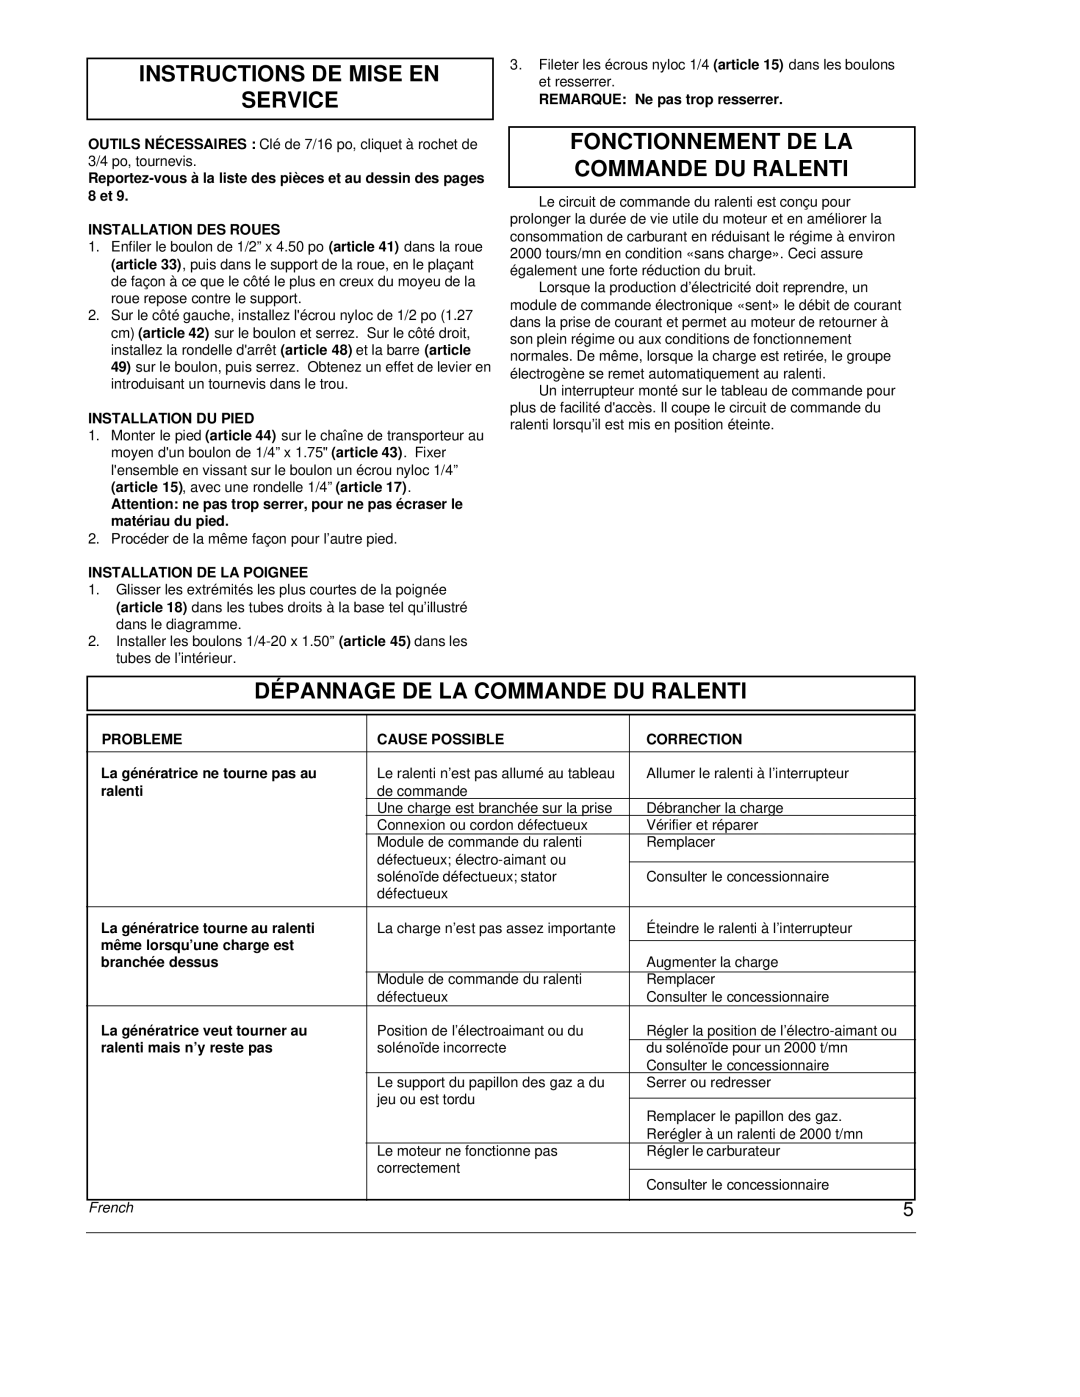 Powermate PC0464500 manual Instructions De Mise En Service, Fonctionnement De La Commande Du Ralenti, French 